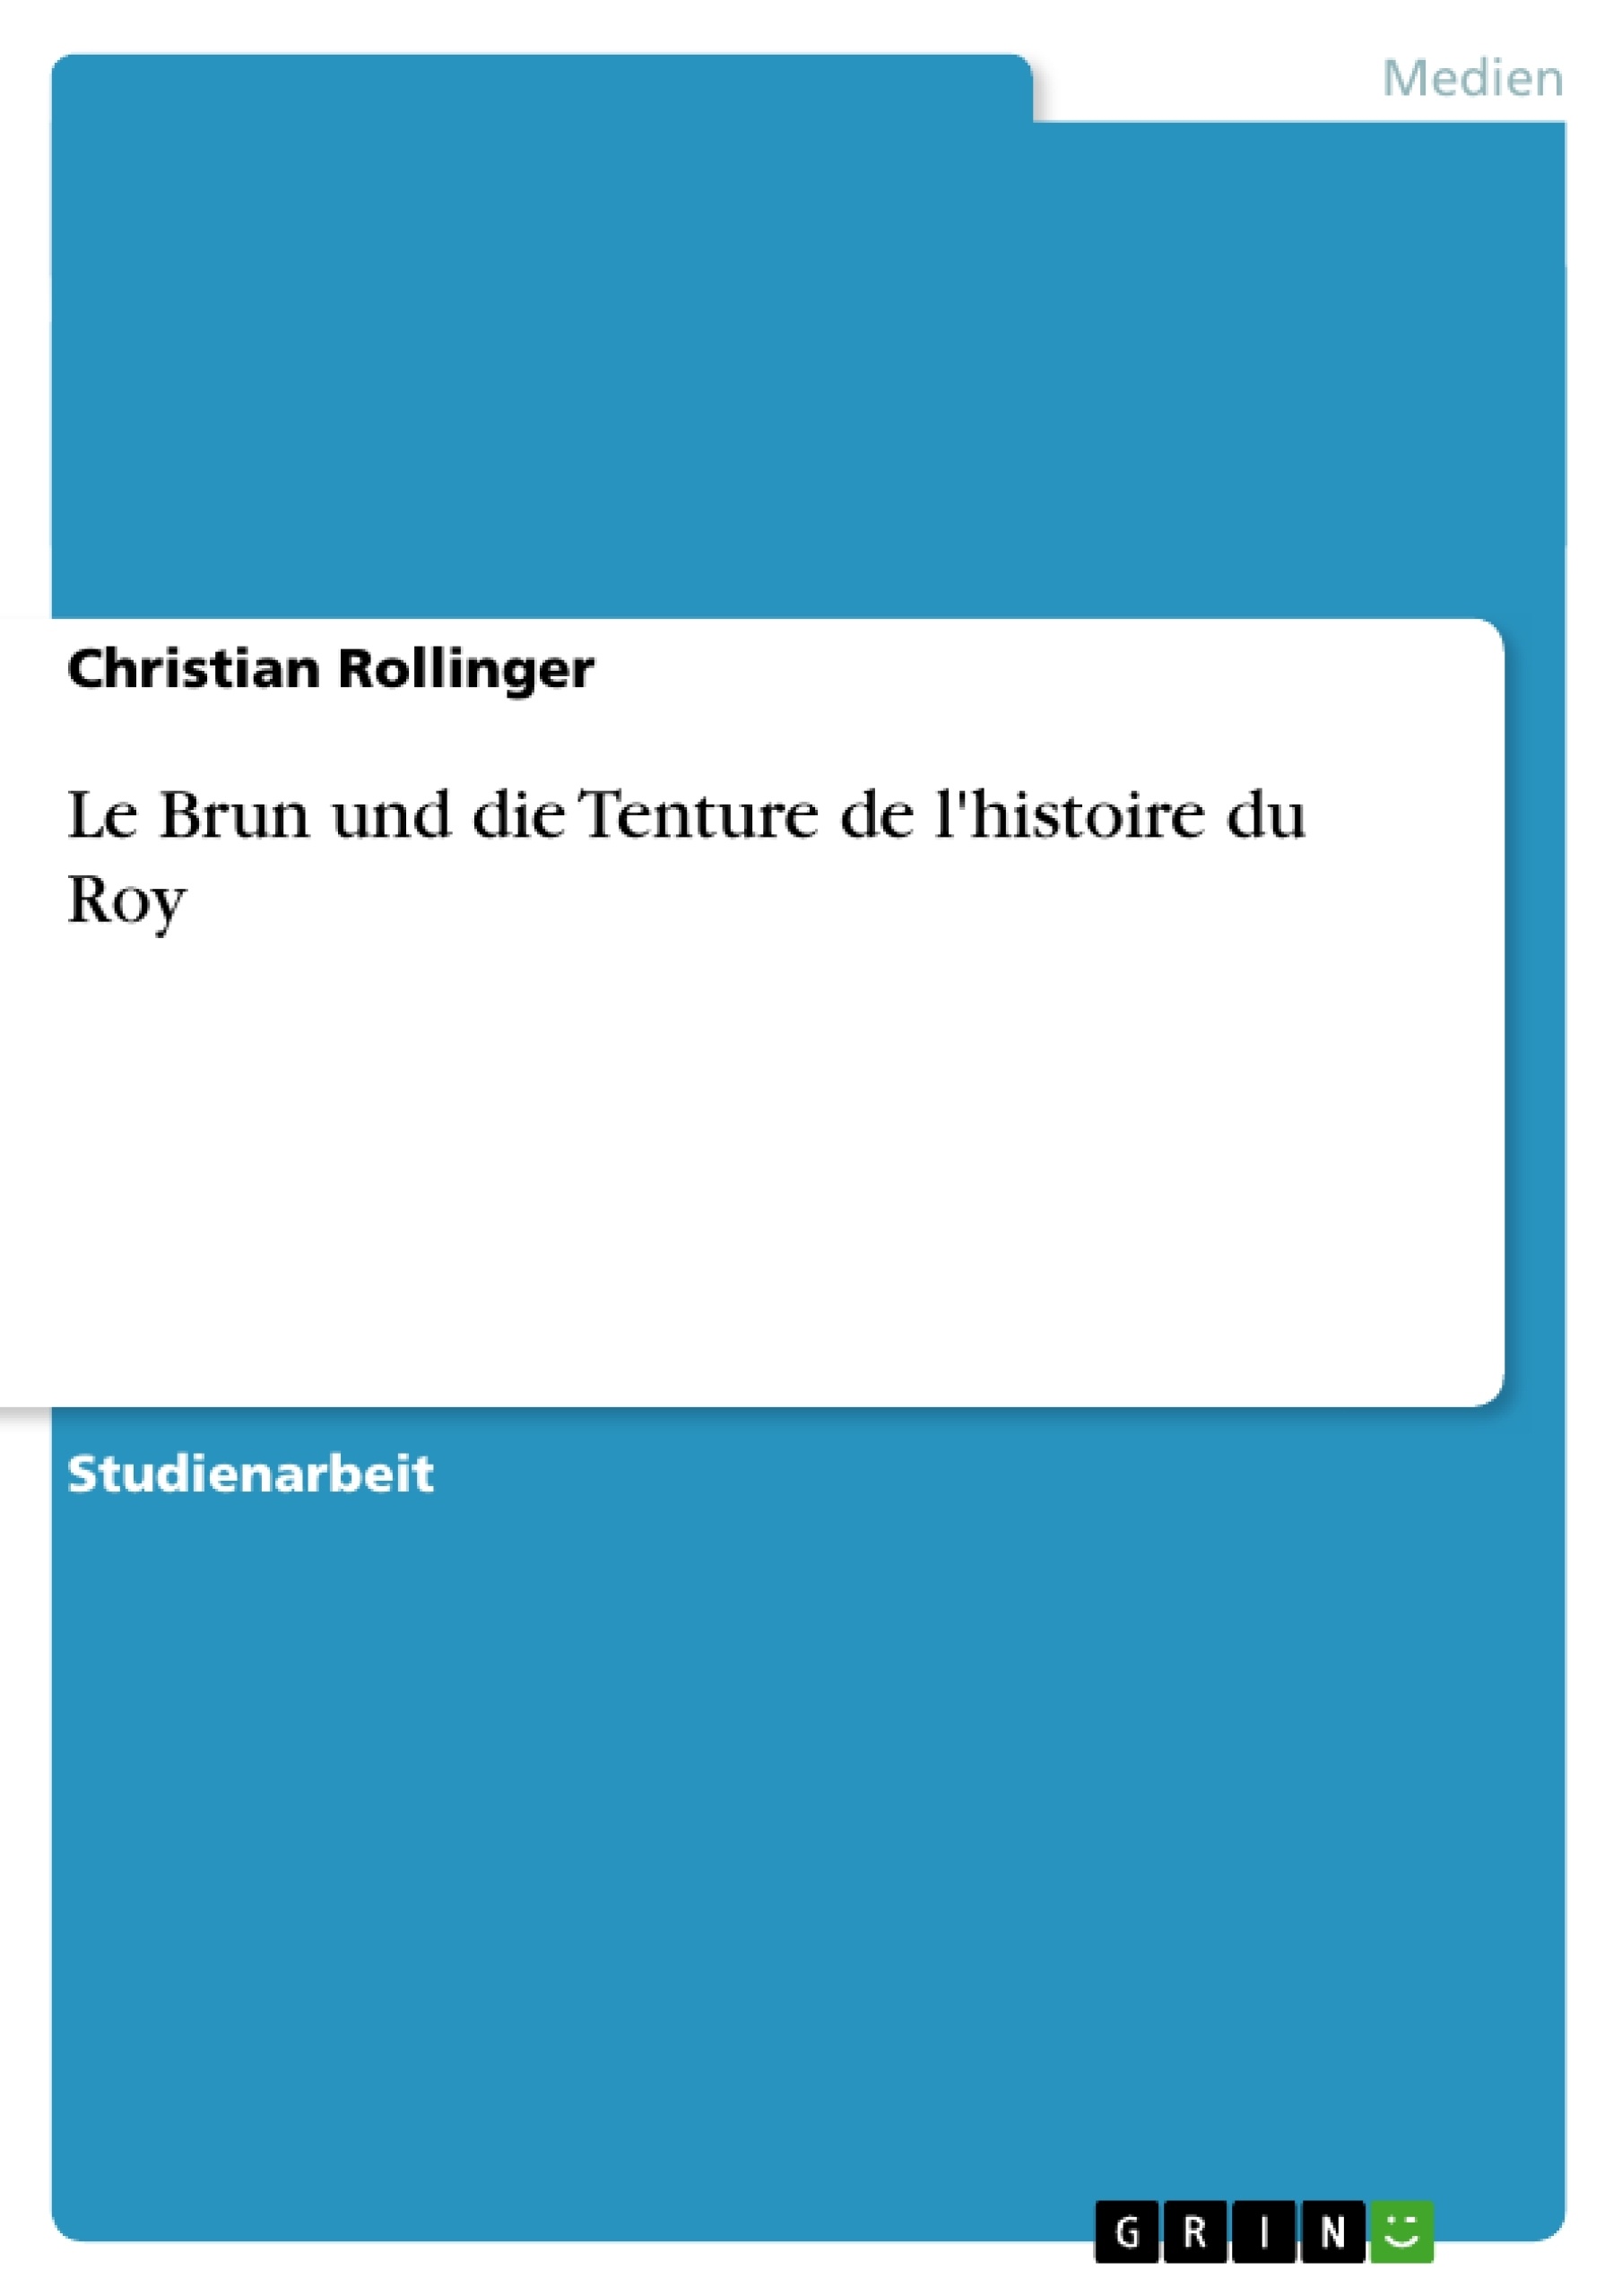 Title: Le Brun und die Tenture de l'histoire du Roy